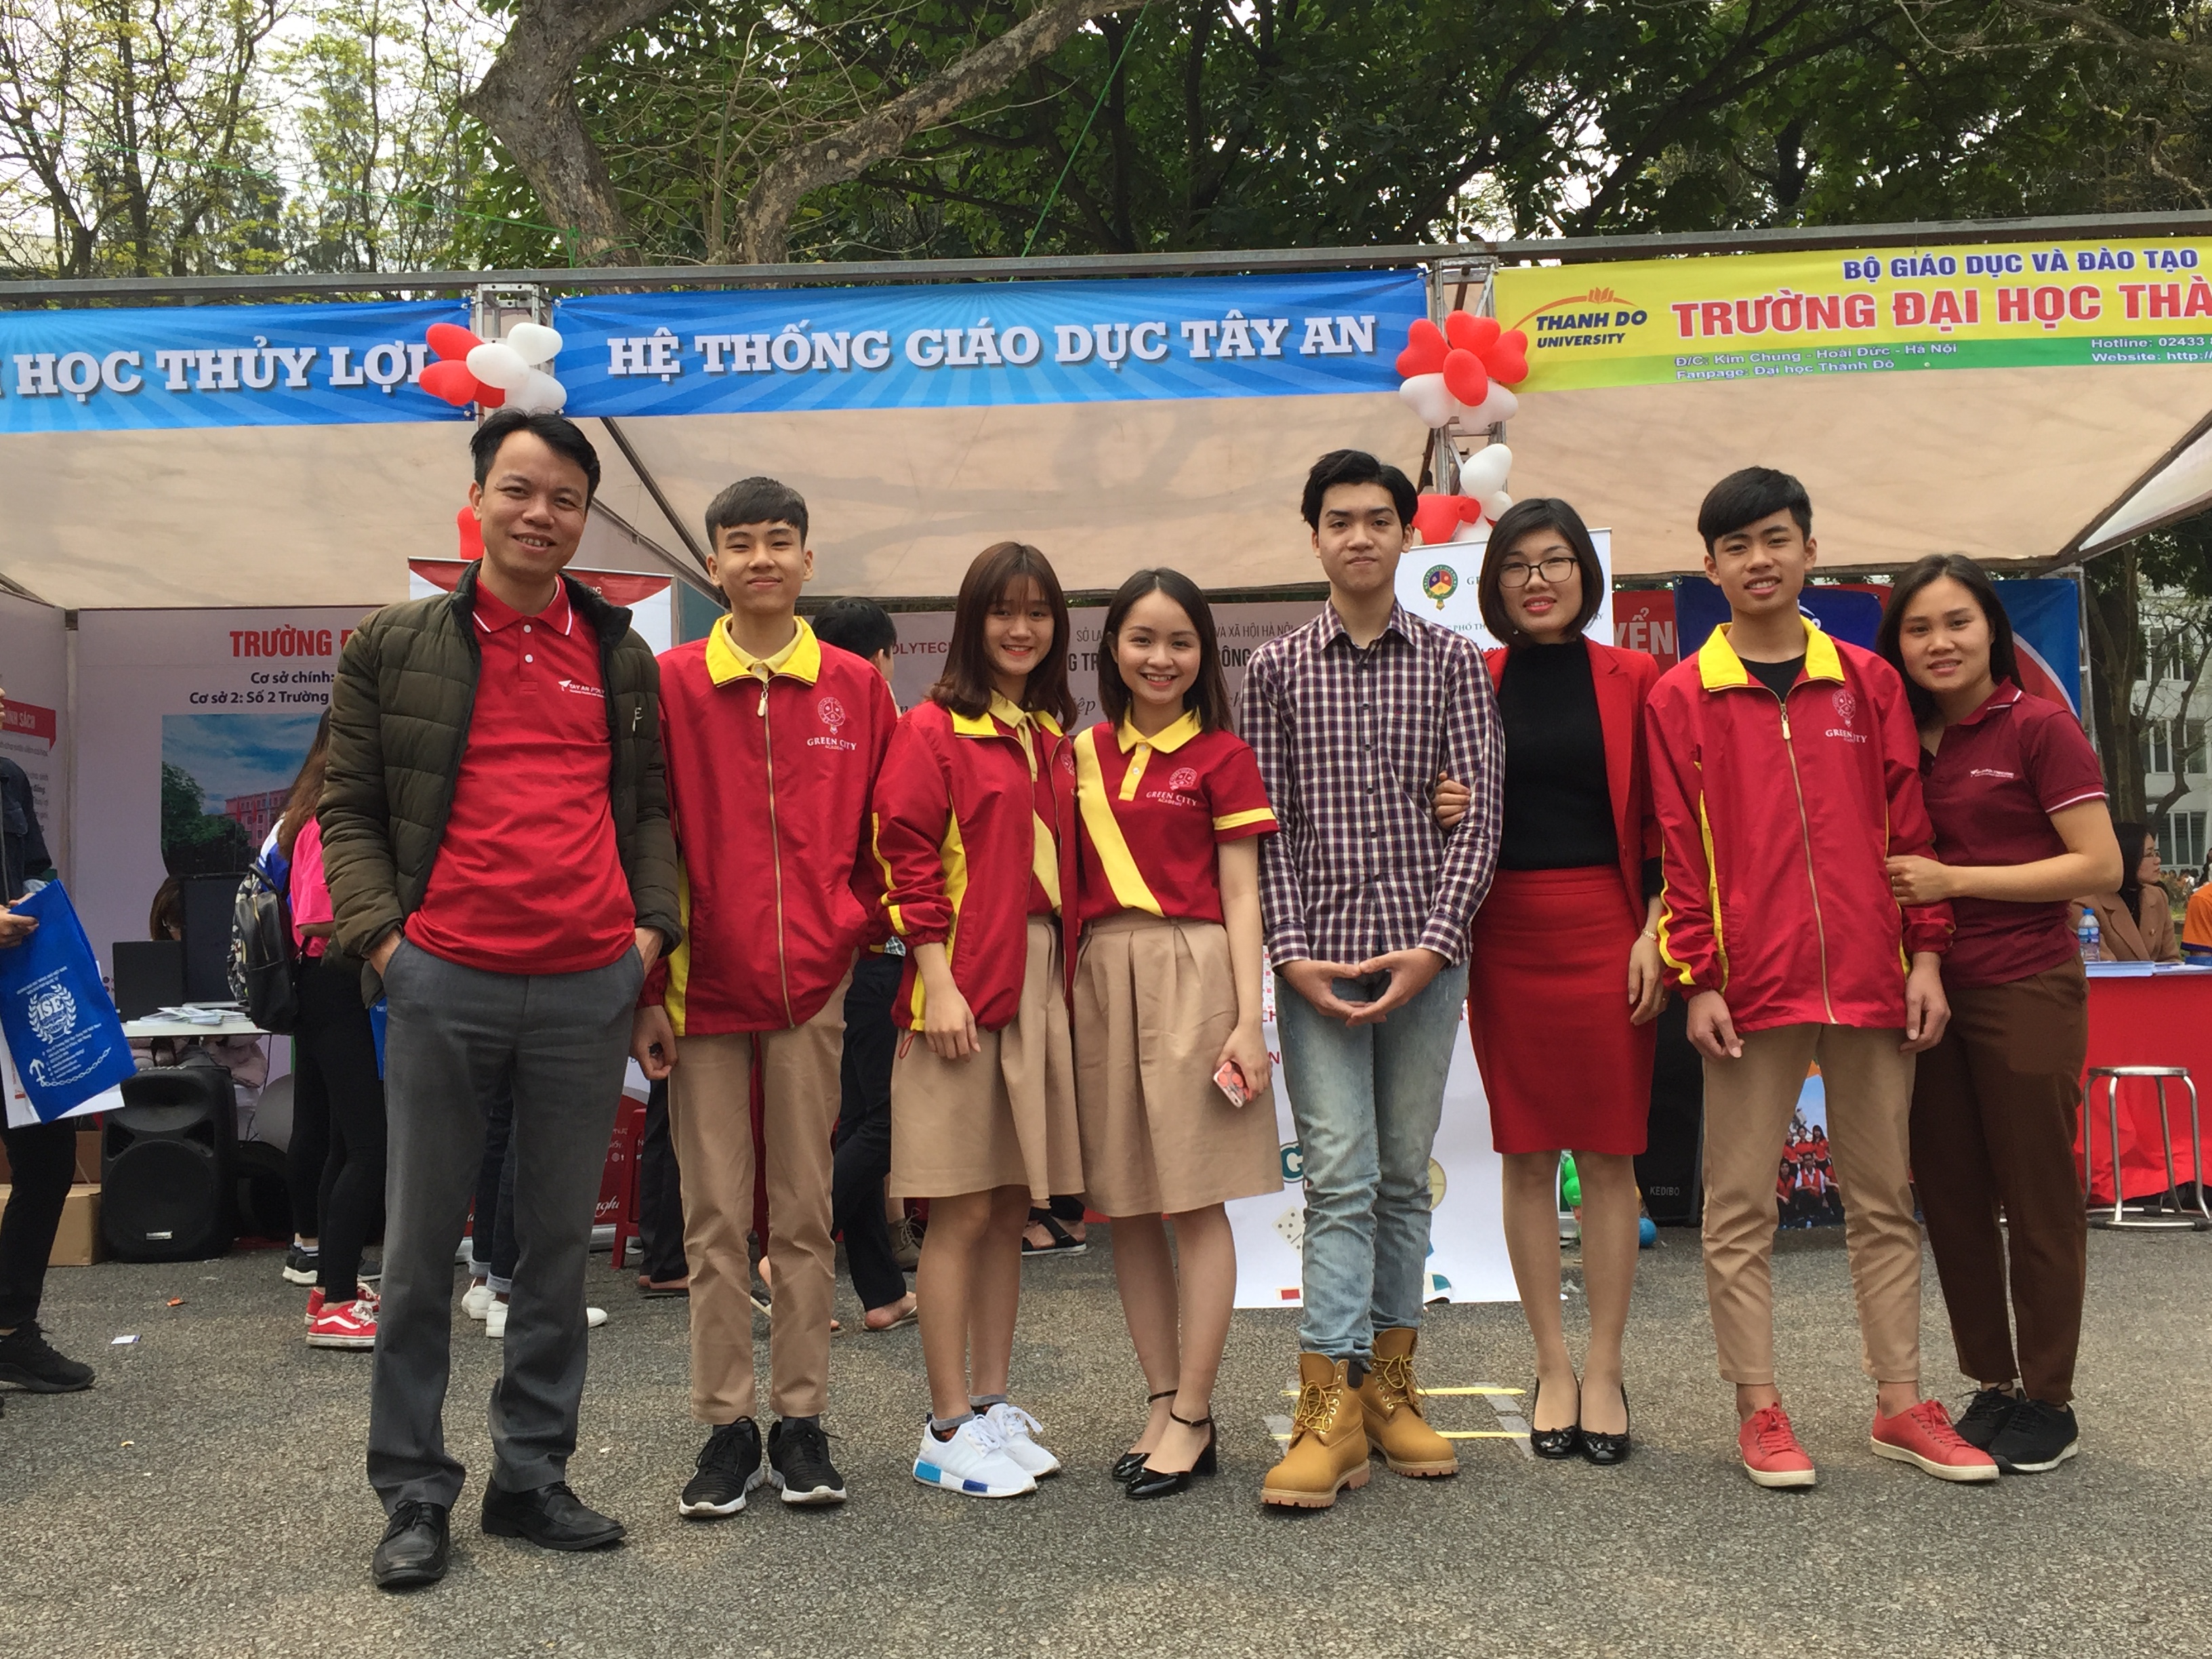 GCA tham gia Ngày hội tư vấn tuyển sinh và Hướng nghiệp năm 2018 tại Hà Nội